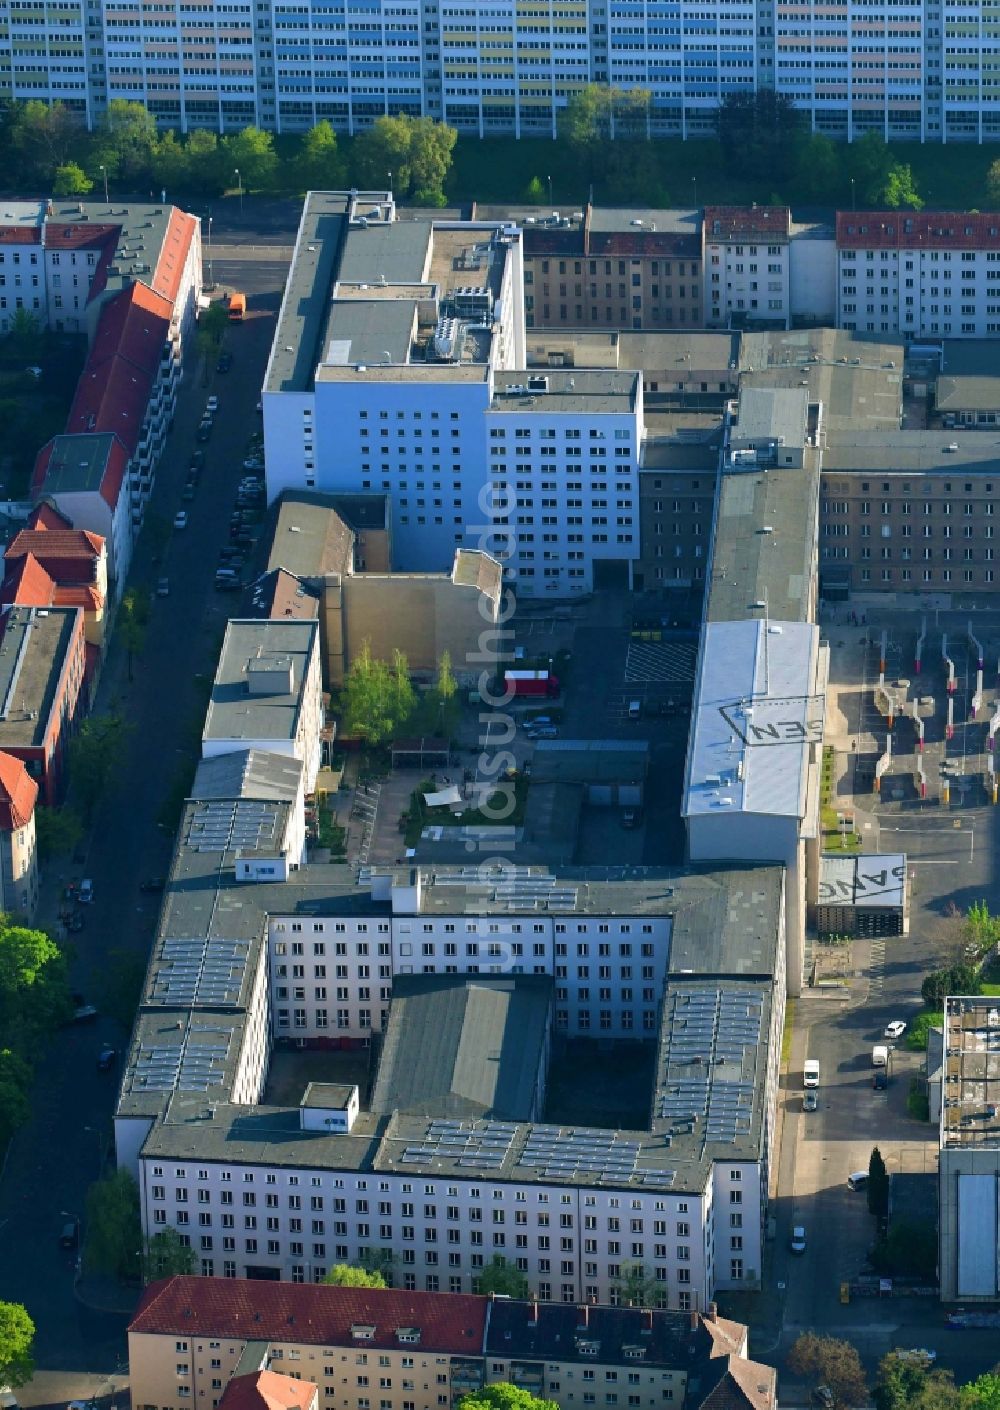 Luftaufnahme Berlin - Gebäudekomplex der Stasi-Gedenkstätte des ehemaligen MfS Ministerium für Staatssicherheit der DDR in der Ruschestraße zwischen Normannenstraße und Frankfurter Allee in Berlin Lichtenberg